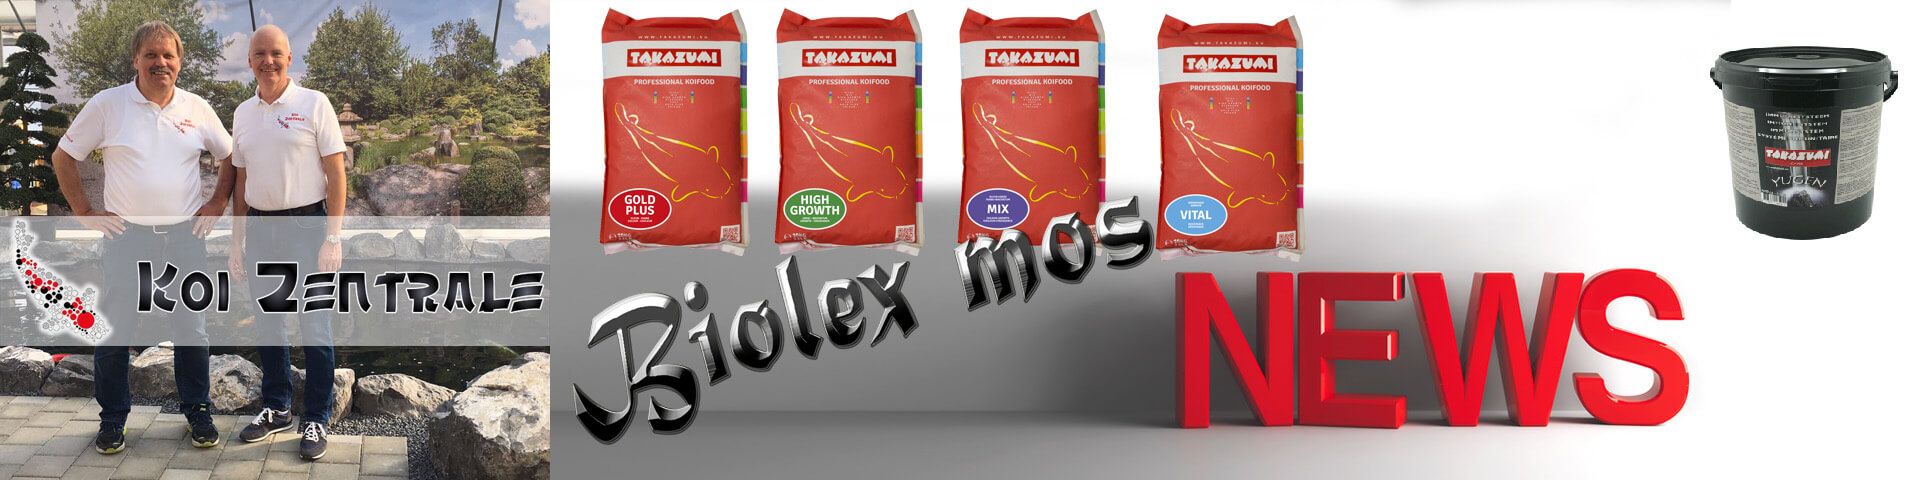 Biolex Mos ist ein Produkt, das zur Kategorie der ‚Präbiotika’ gehört.